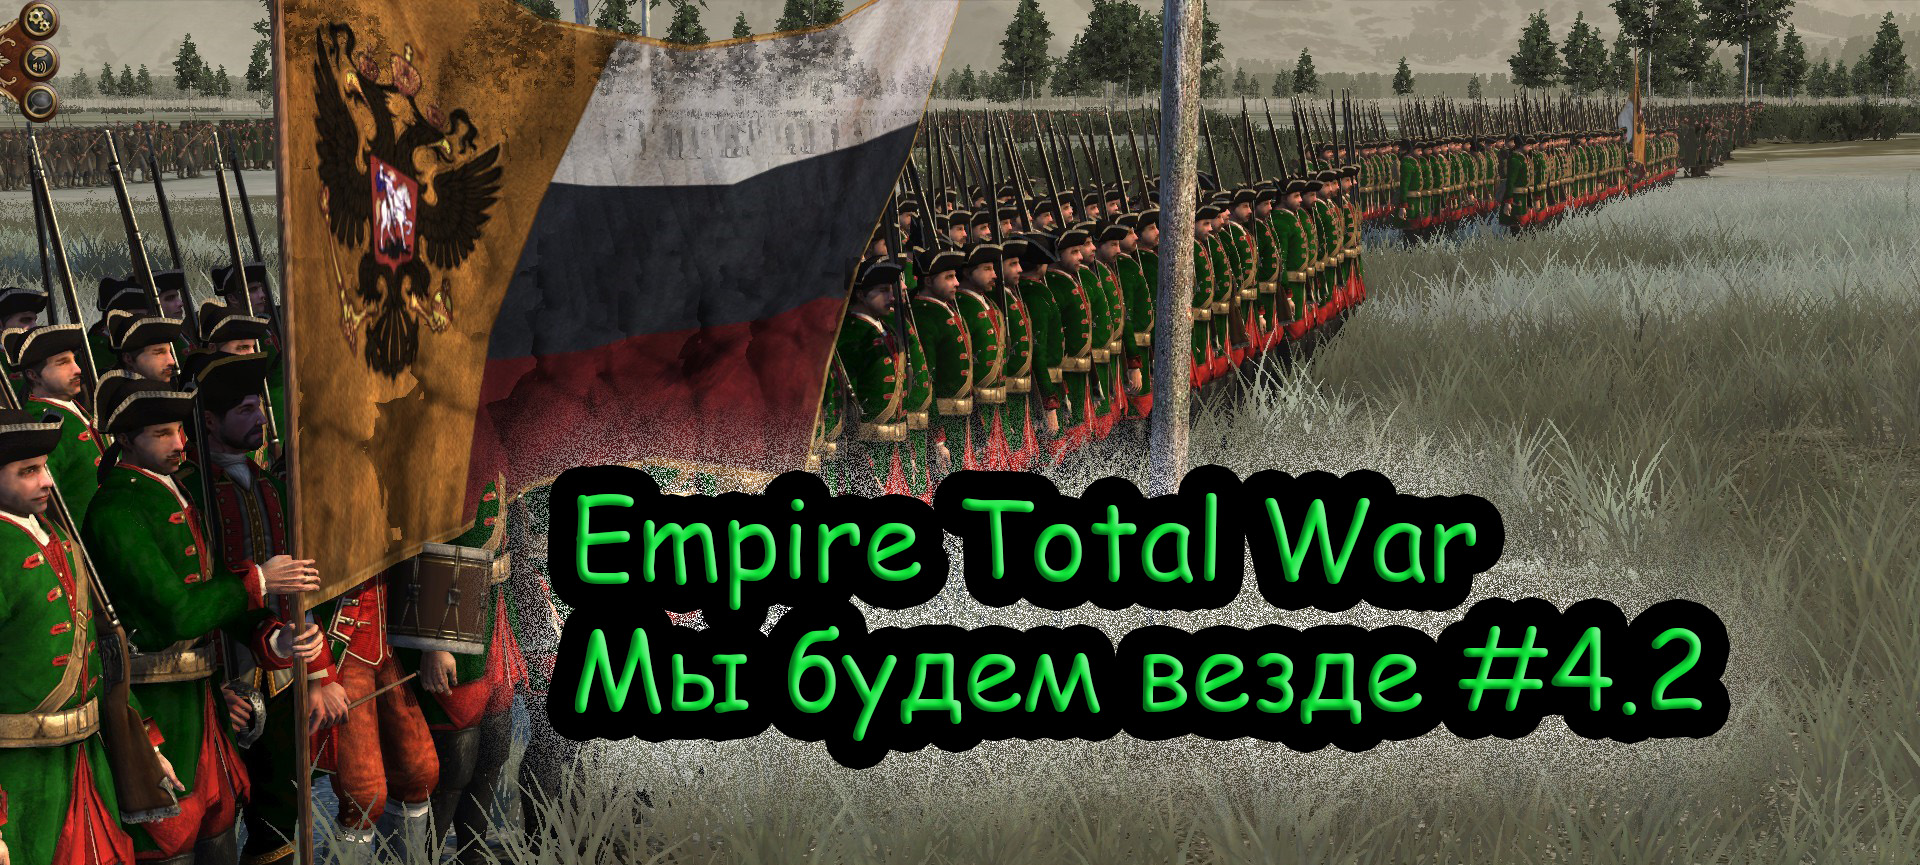 Прохождение Empire Total War за Российскую Империю №4.2